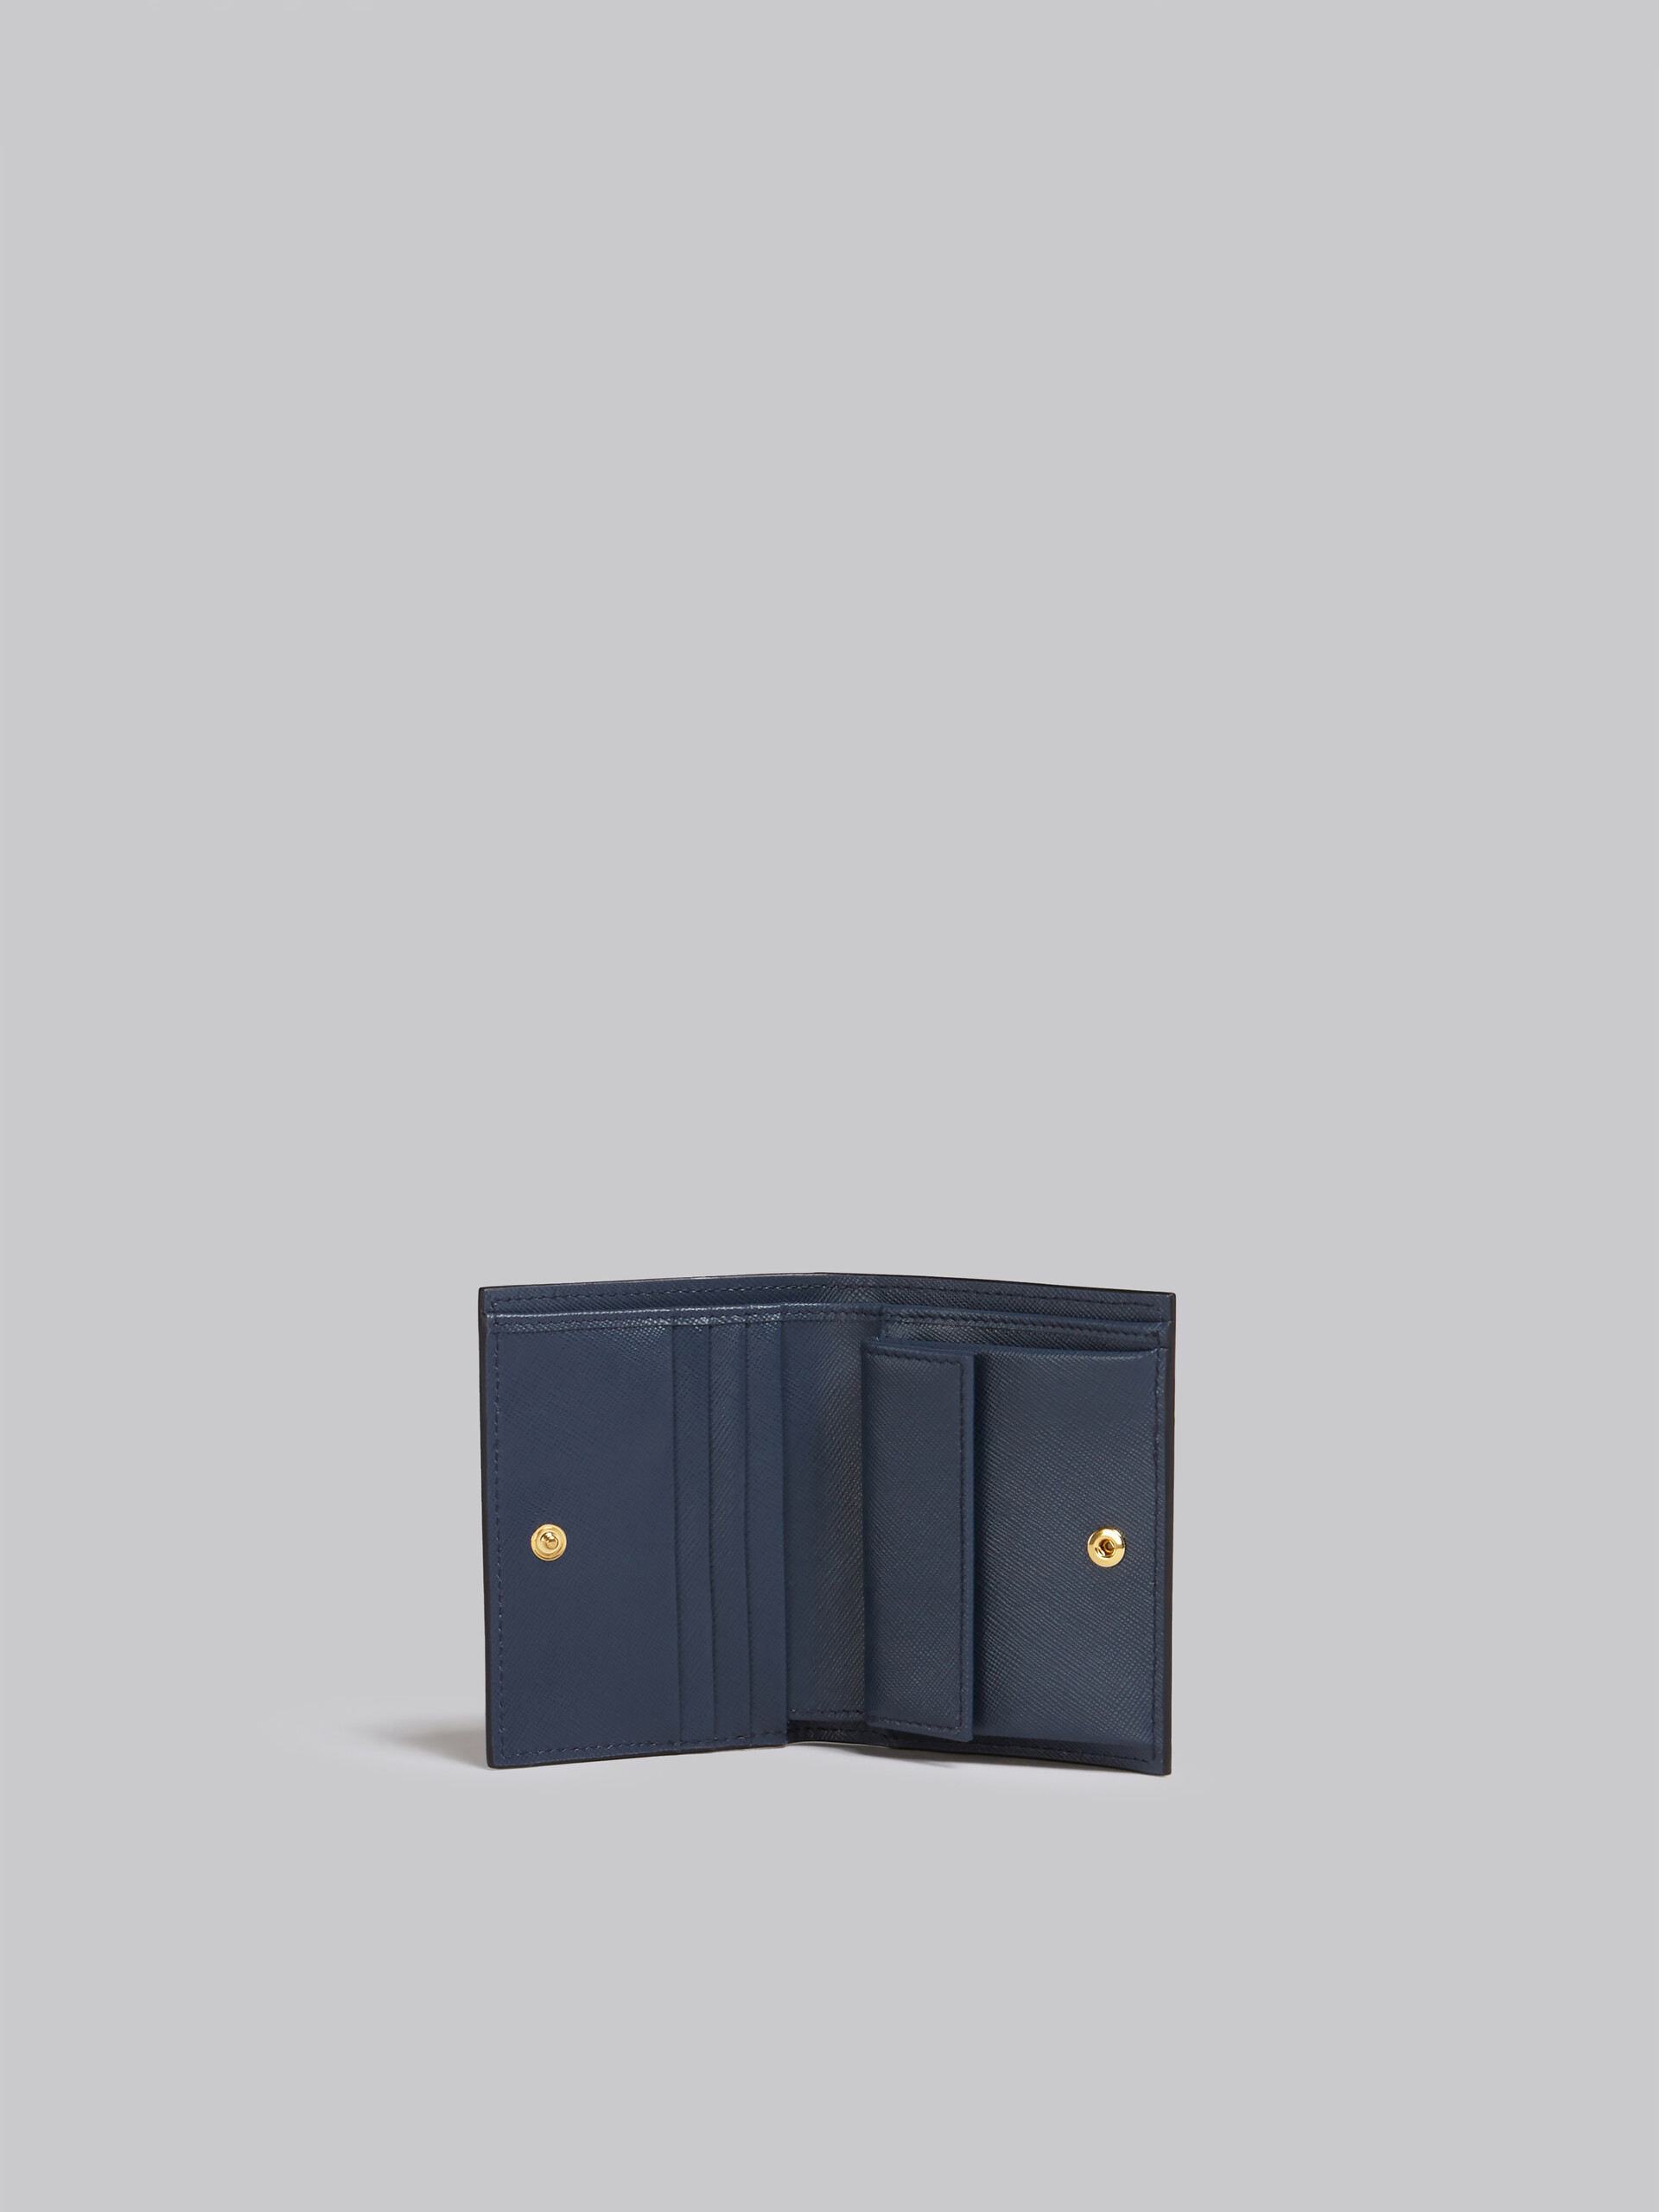 Portafoglio bi-fold in saffiano arancio rosa e blu - Portafogli - Image 2